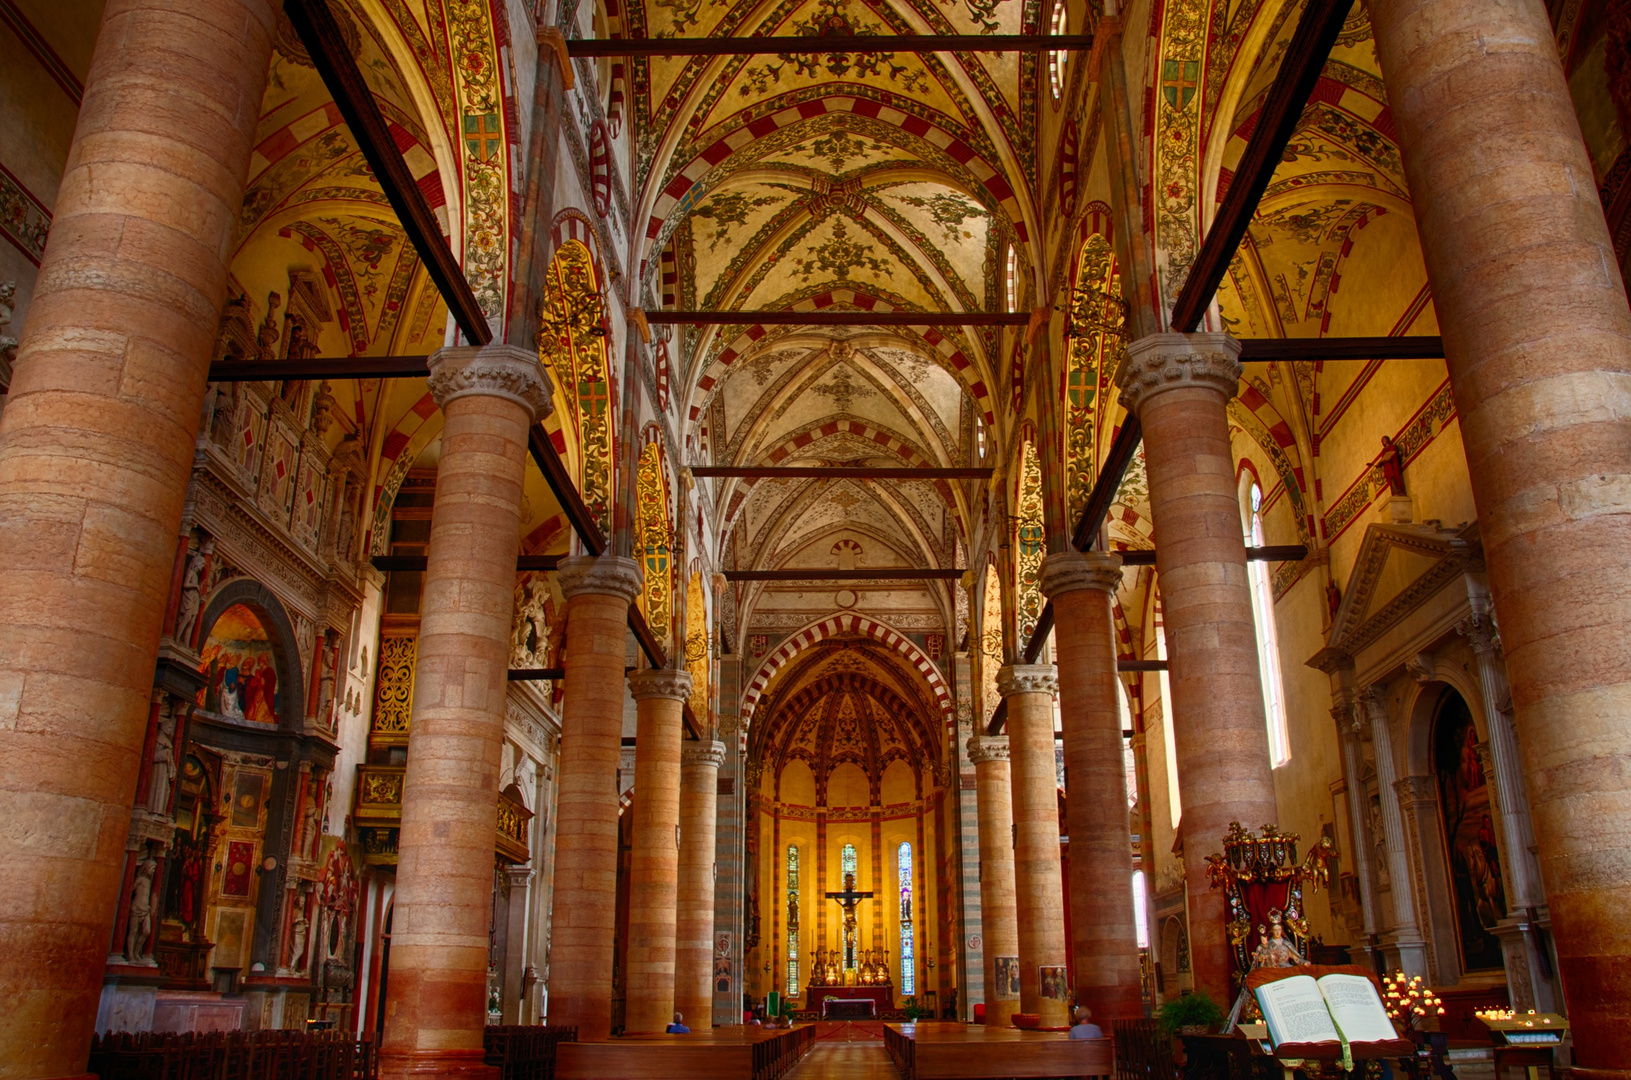 Cattedrale di Verona 2